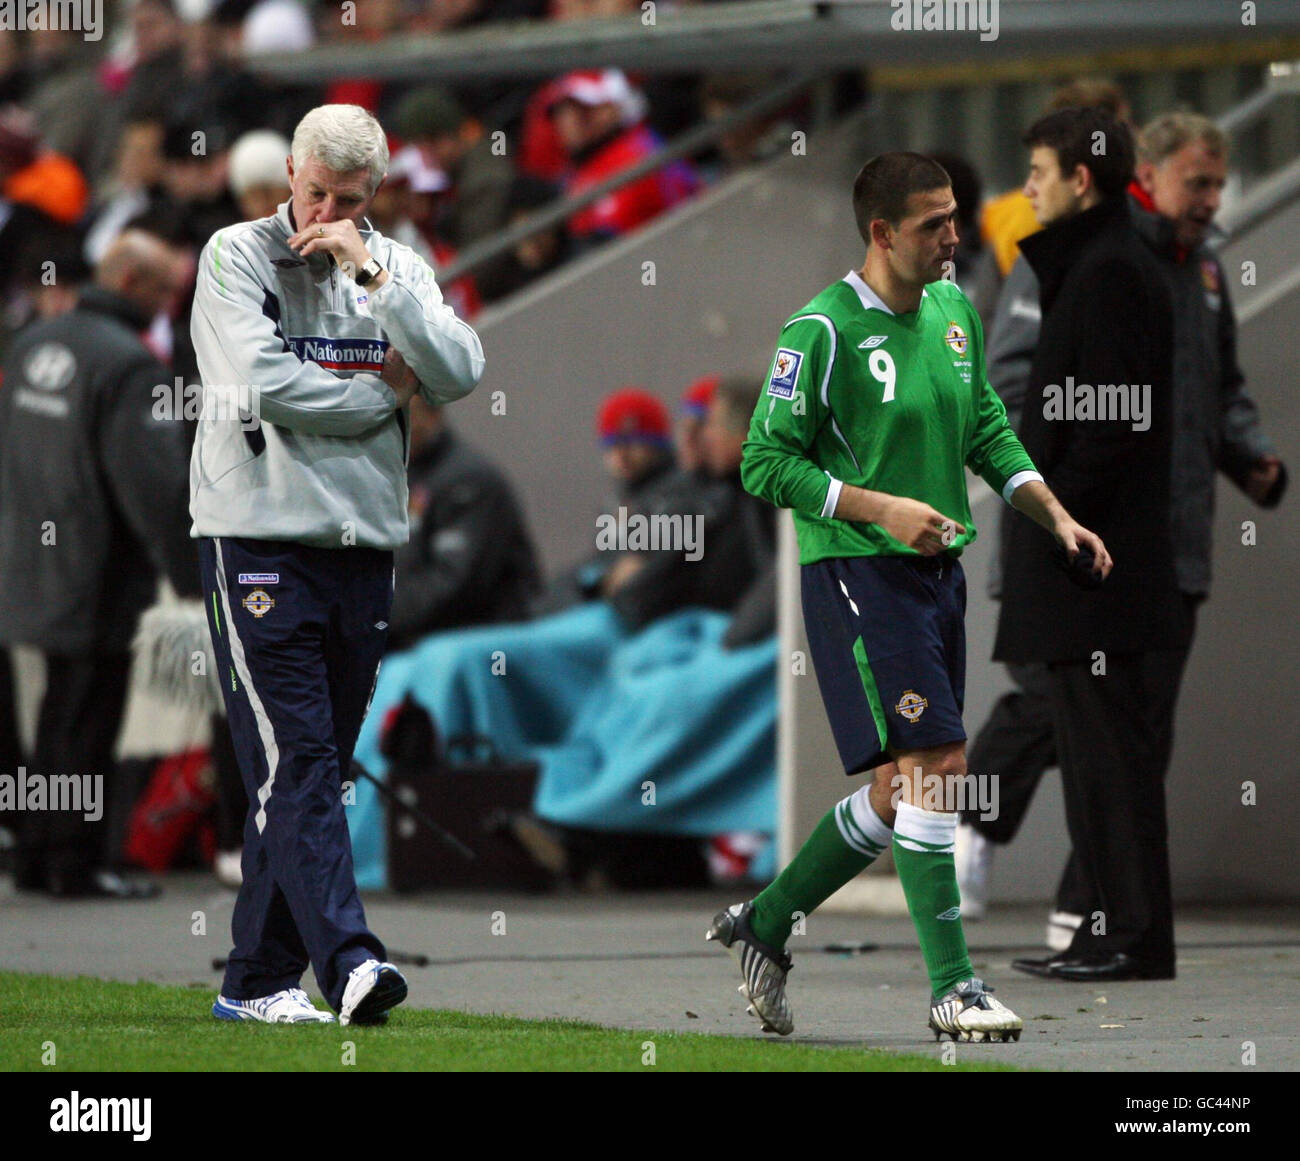 Der nordirische David Healy (rechts) wird in der zweiten Halbzeit von Manager Nigel Worthington (links) während des FIFA-WM-Qualifikationsspiels in der Synot Tip Arena, Prag, abgefahren. Stockfoto